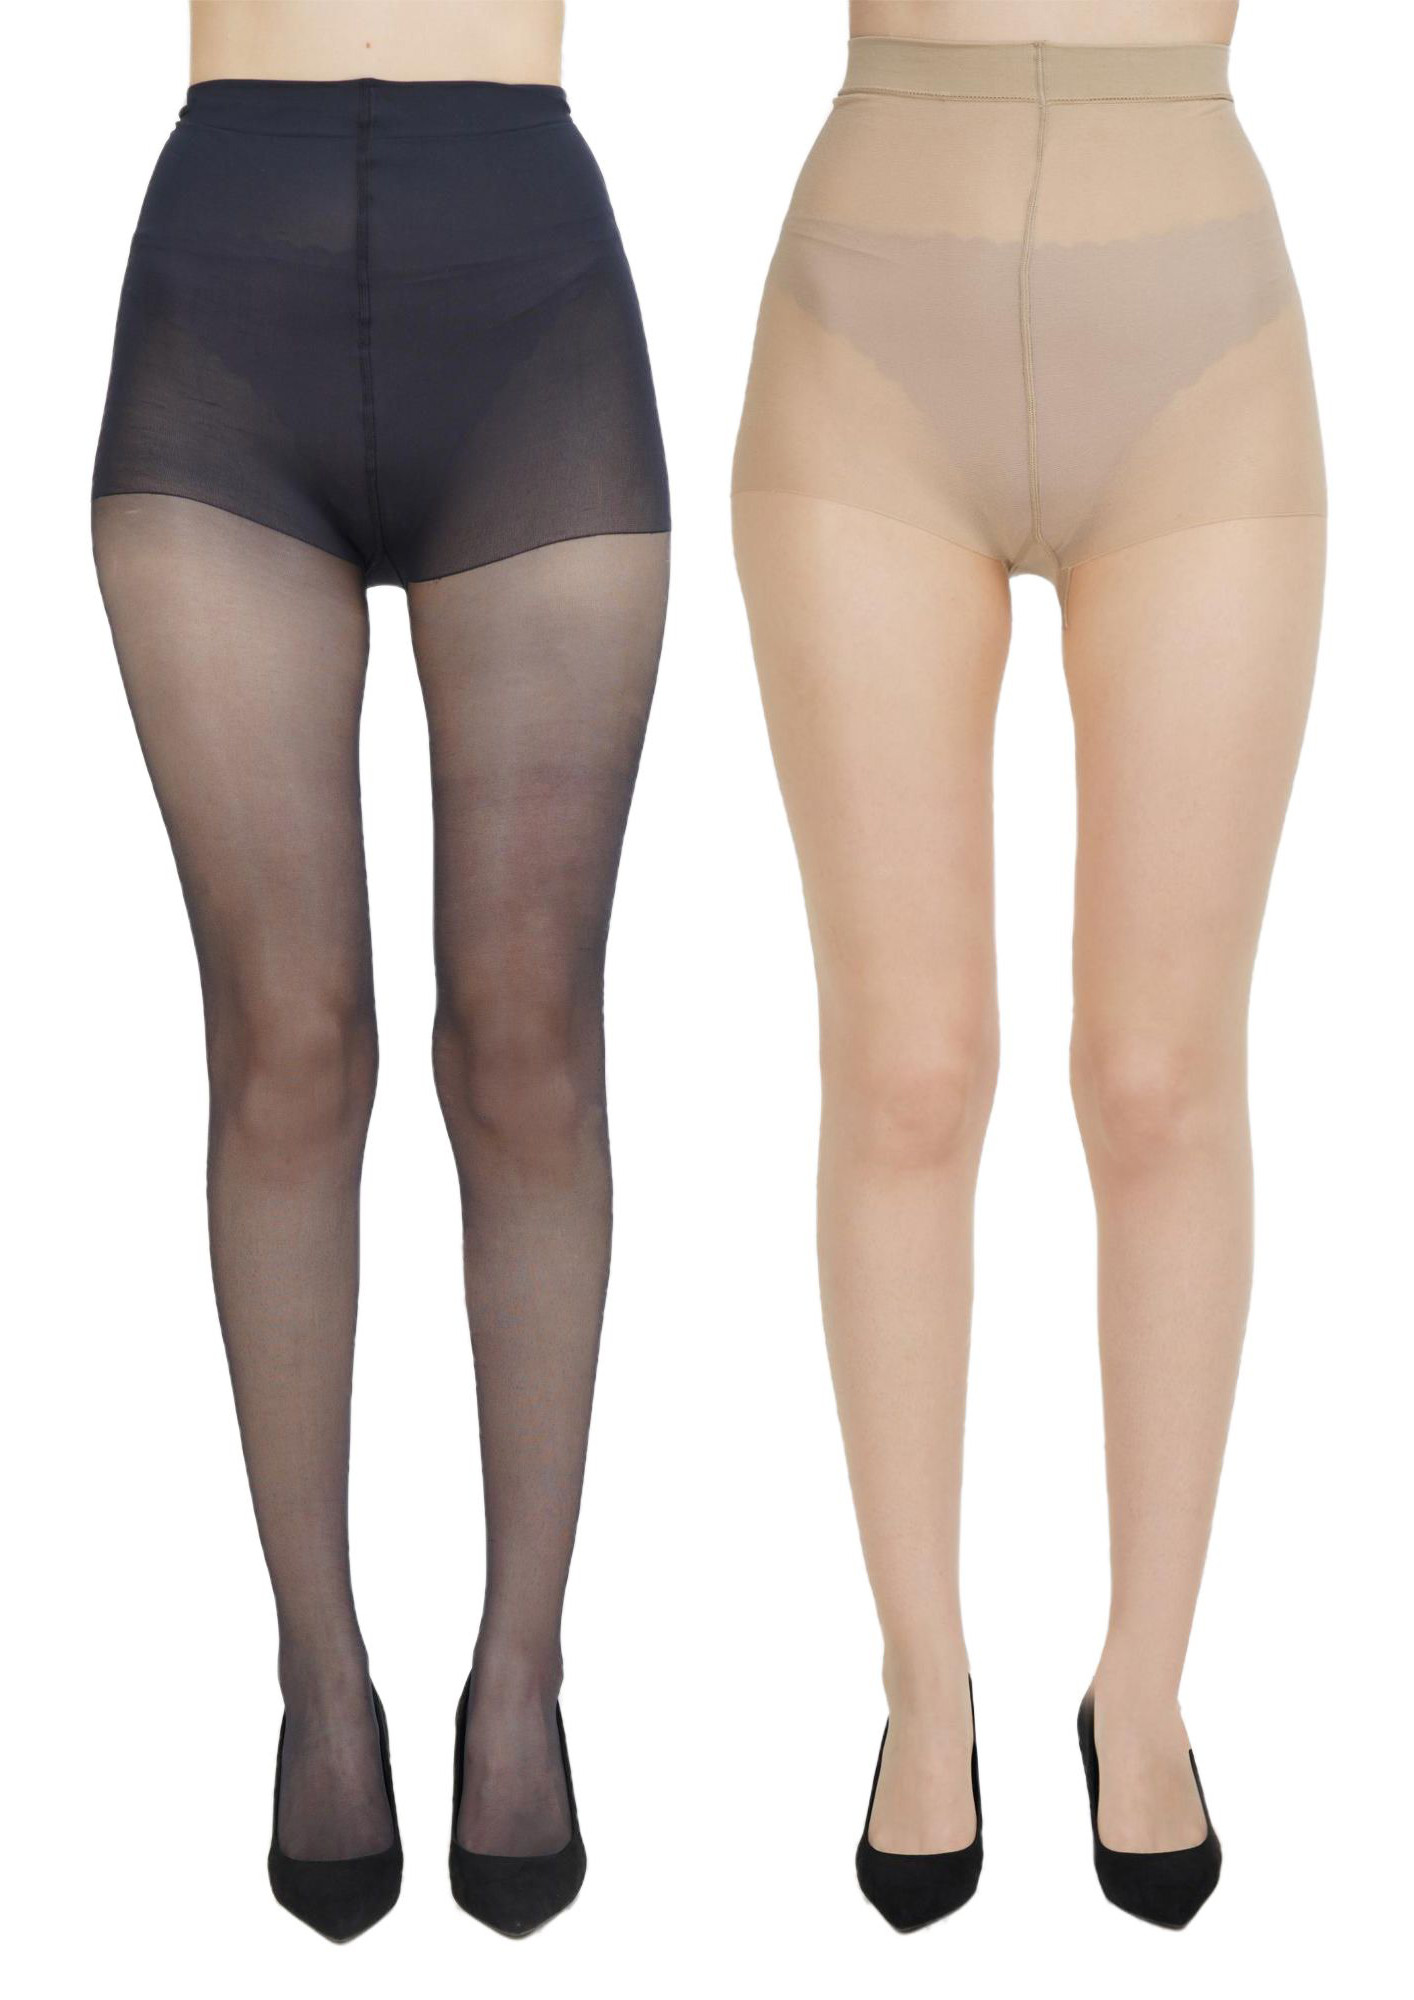 NEXT2SKIN Women Sheer Transparent Low Denier Pantyhose Stockings - Pack of 2 (Black&Skin)